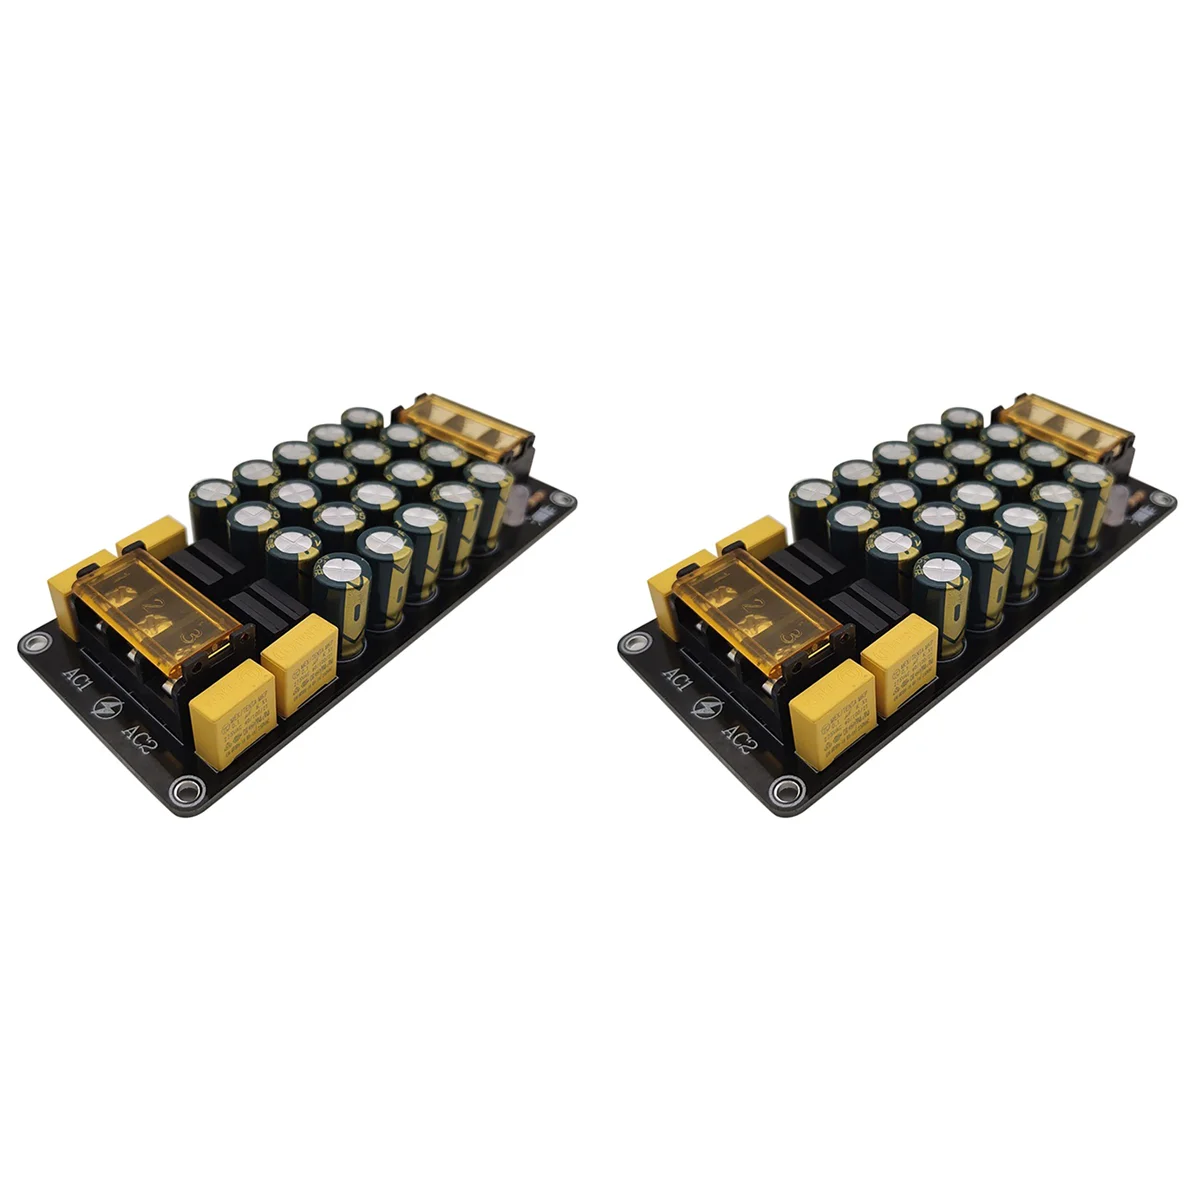 

2X Dual Power Rectifier Filter Module 6A X2 Power Amplifier Board 2X300W for Power Amplifier Rectifier Filter